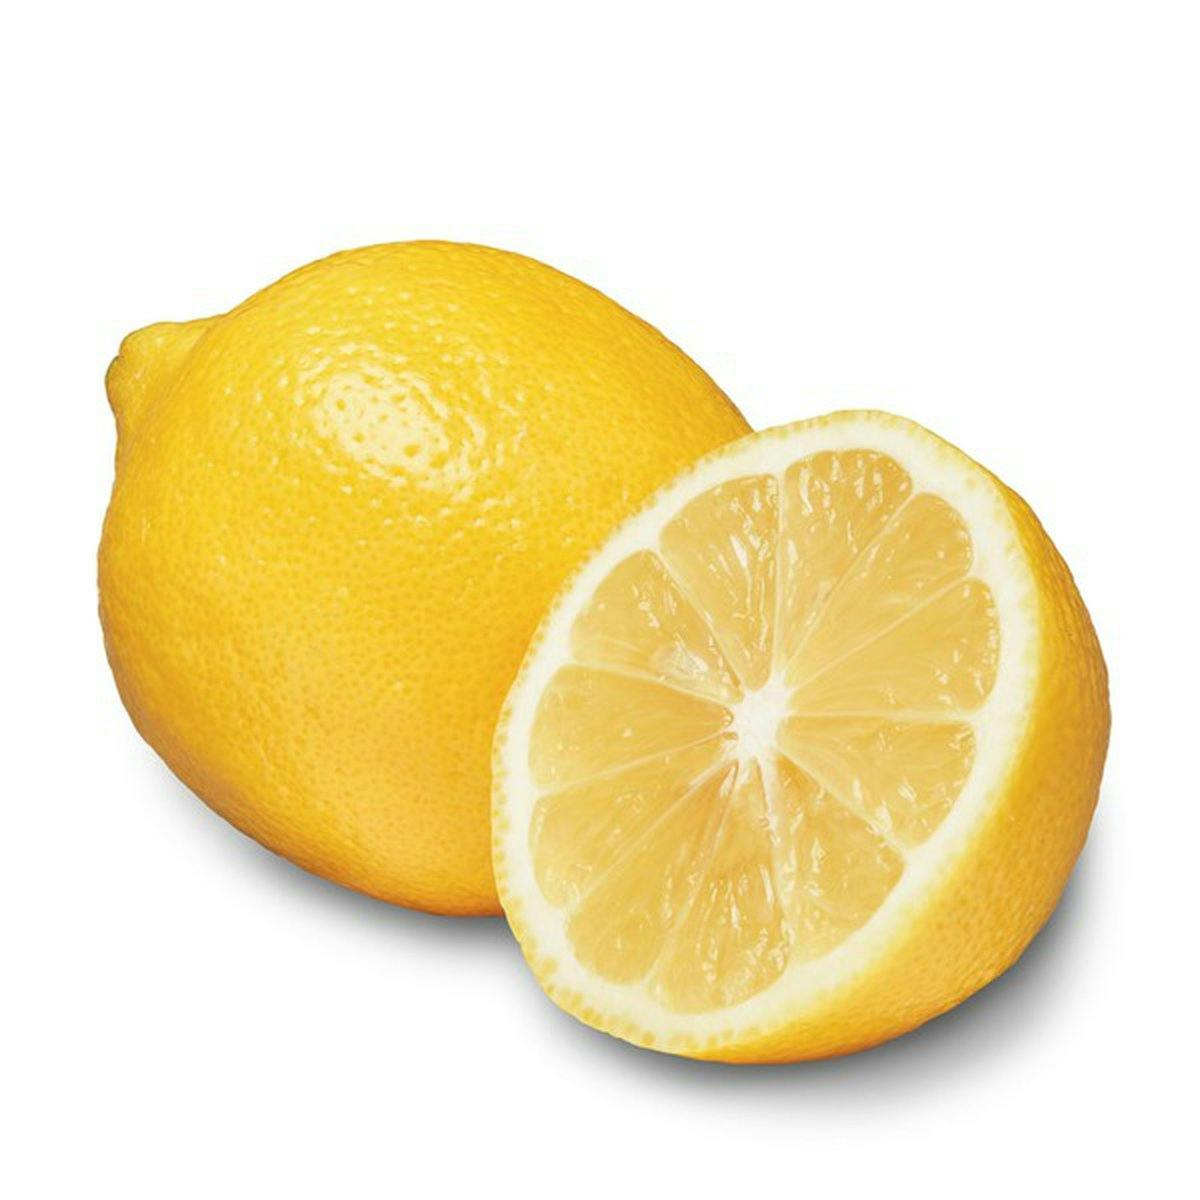 Lemon to taste